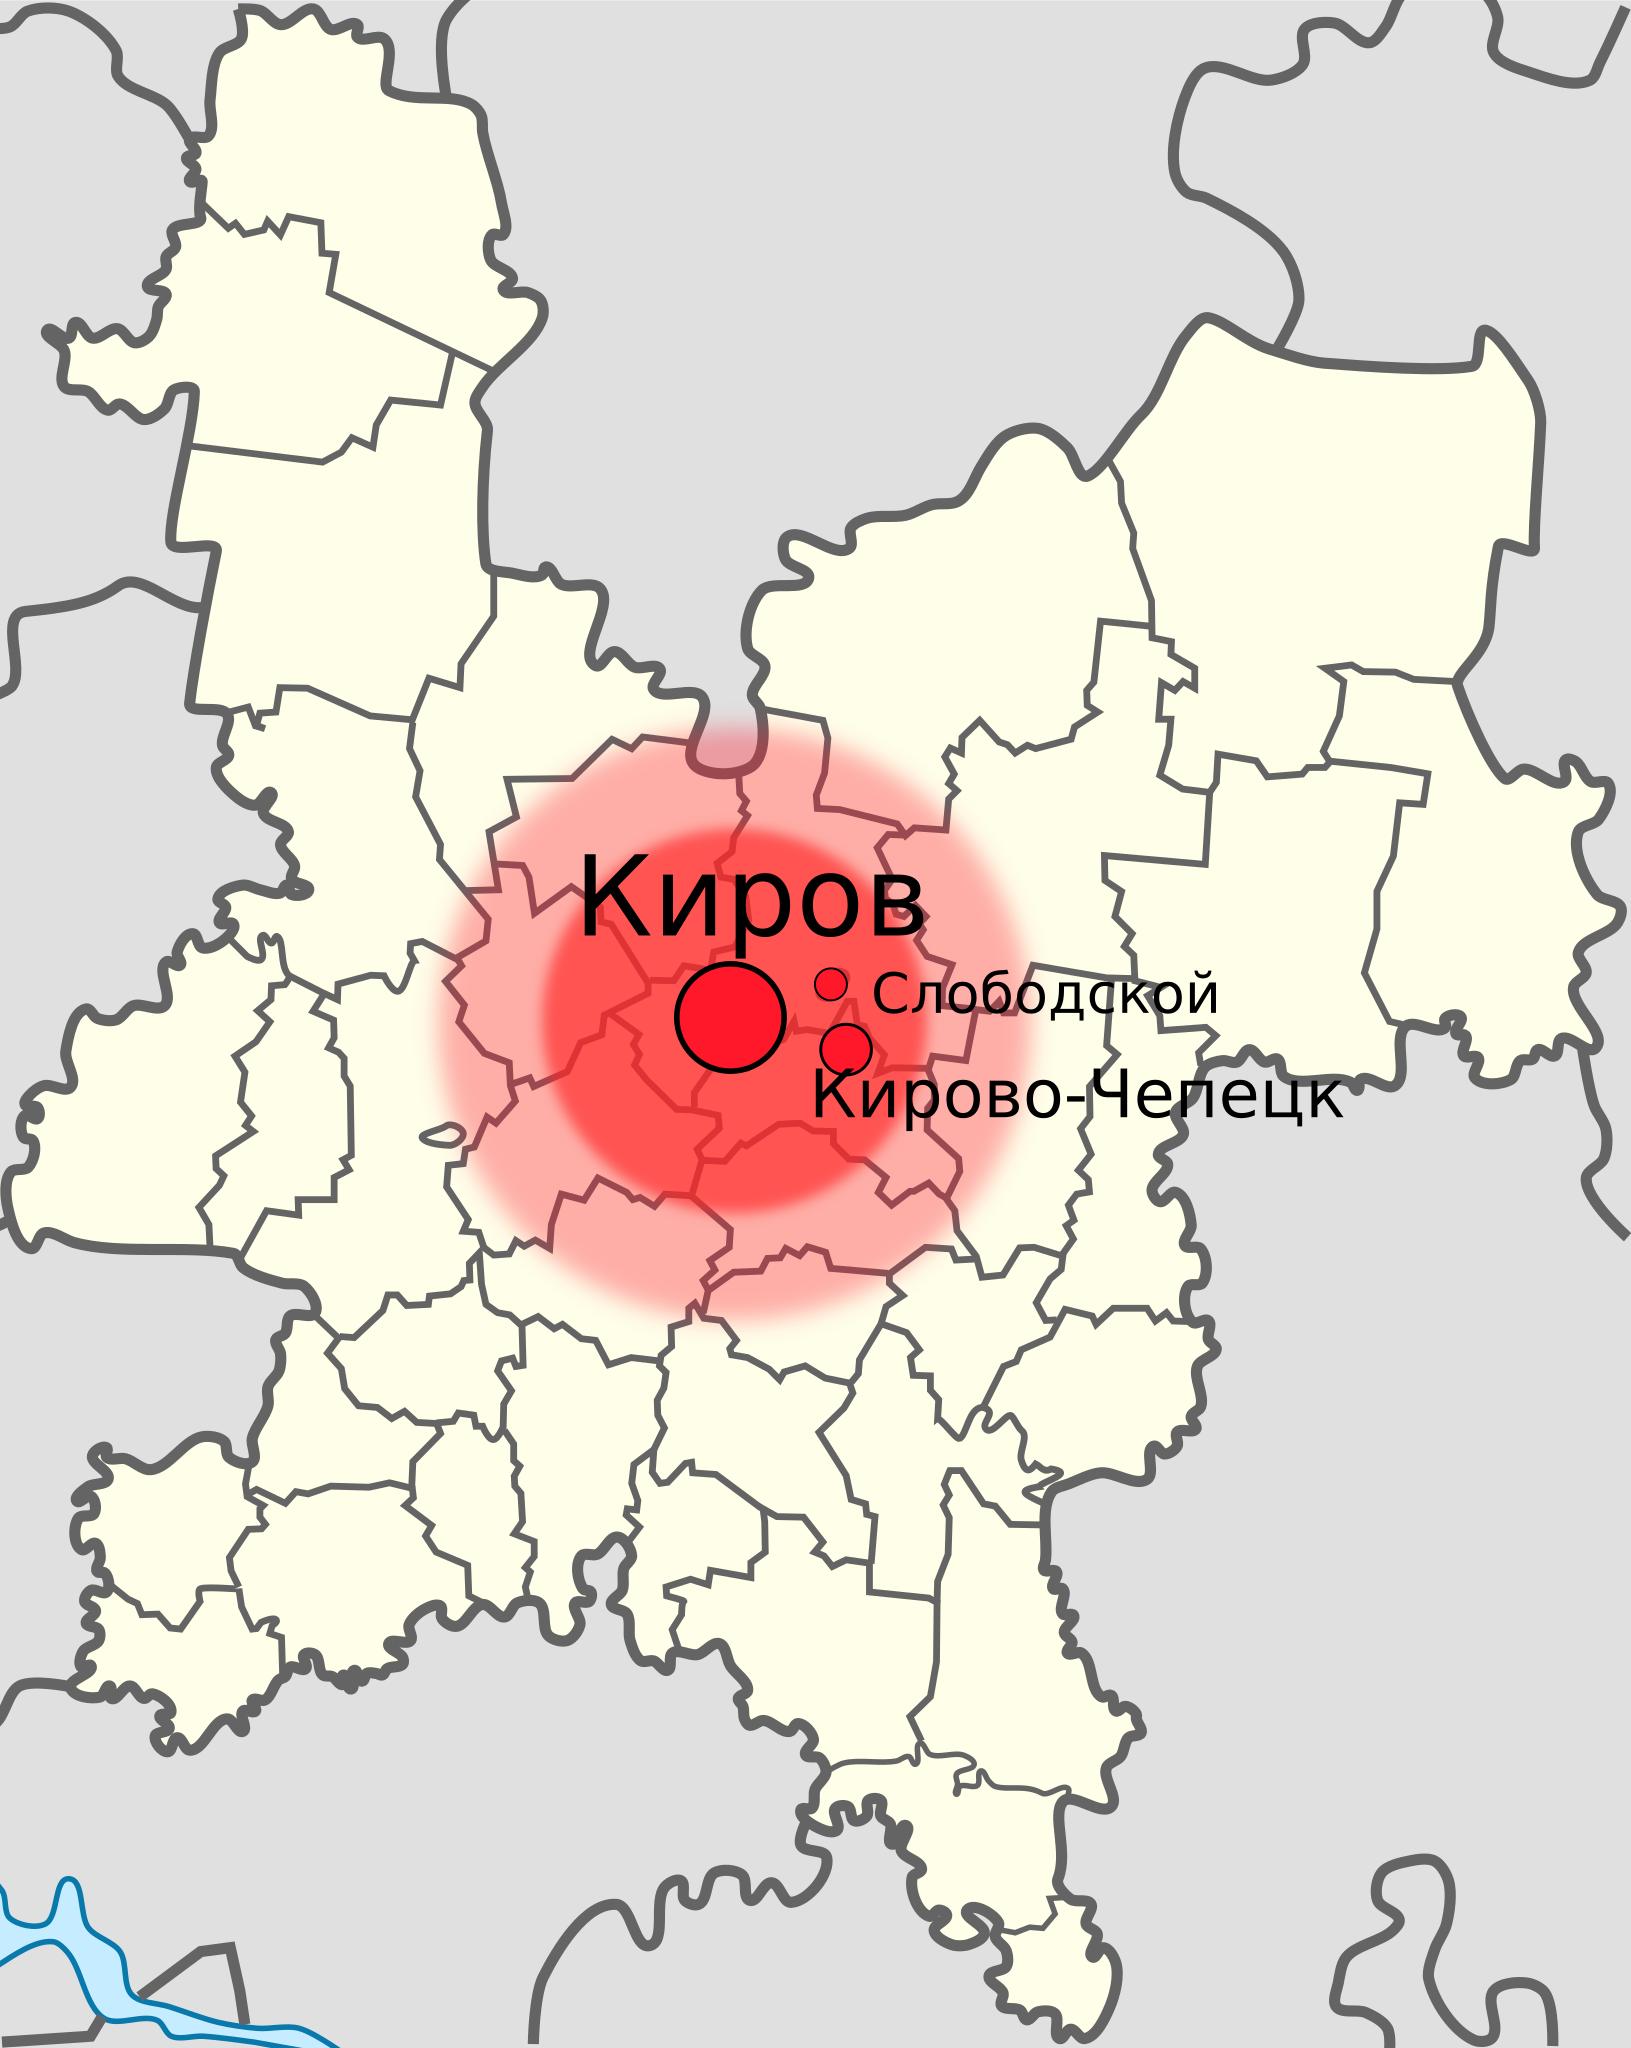 На карте областной центр Кировской области